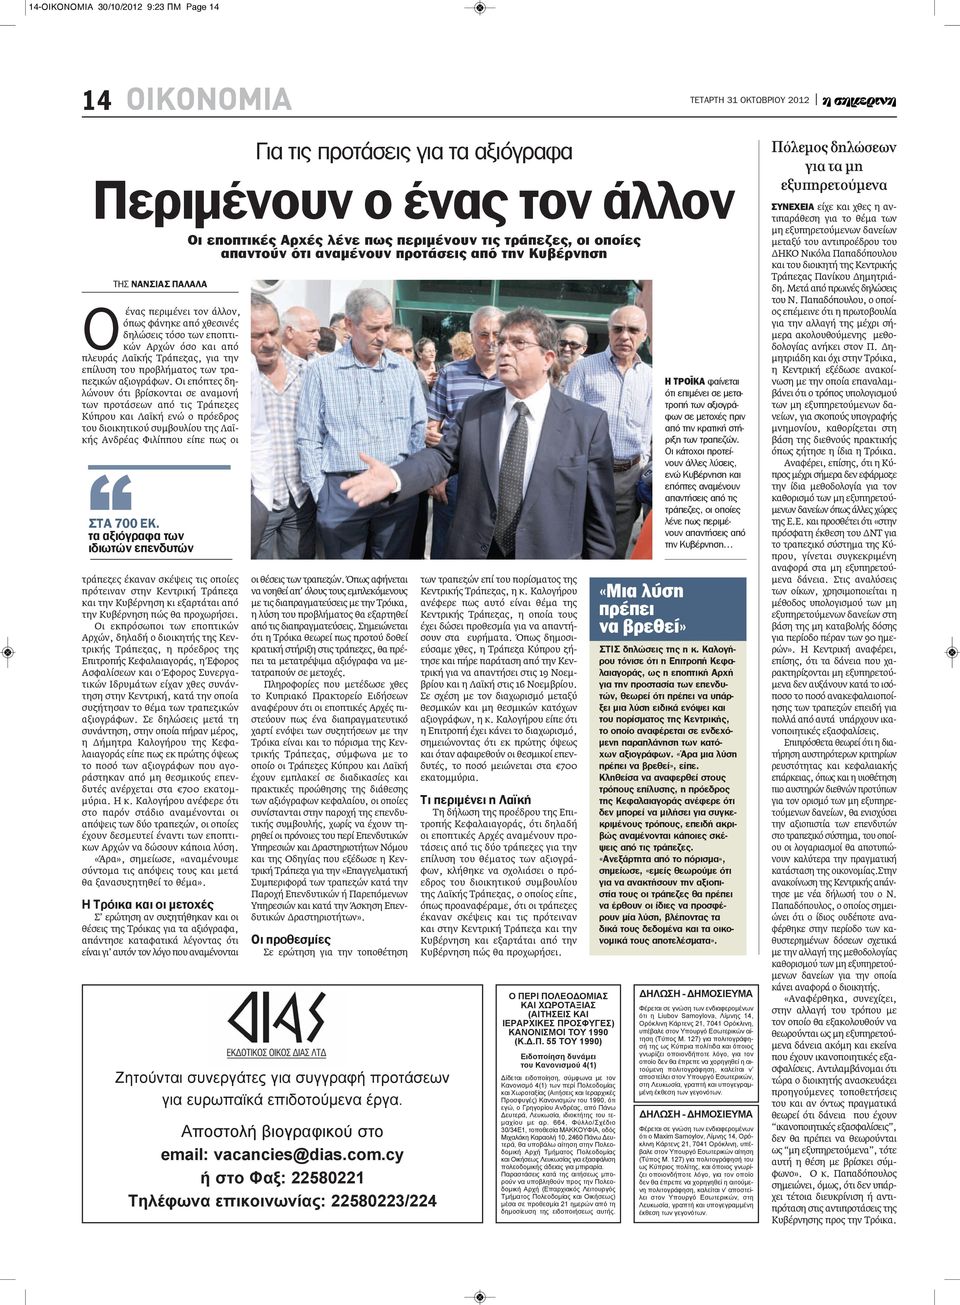 Οι επόπτες δηλώνουν ότι βρίσκονται σε αναμονή των προτάσεων από τις Τράπεζες Κύπρου και Λαϊκή ενώ ο πρόεδρος του διοικητικού συμβουλίου της Λαϊκής Ανδρέας Φιλίππου είπε πως οι τράπεζες έκαναν σκέψεις